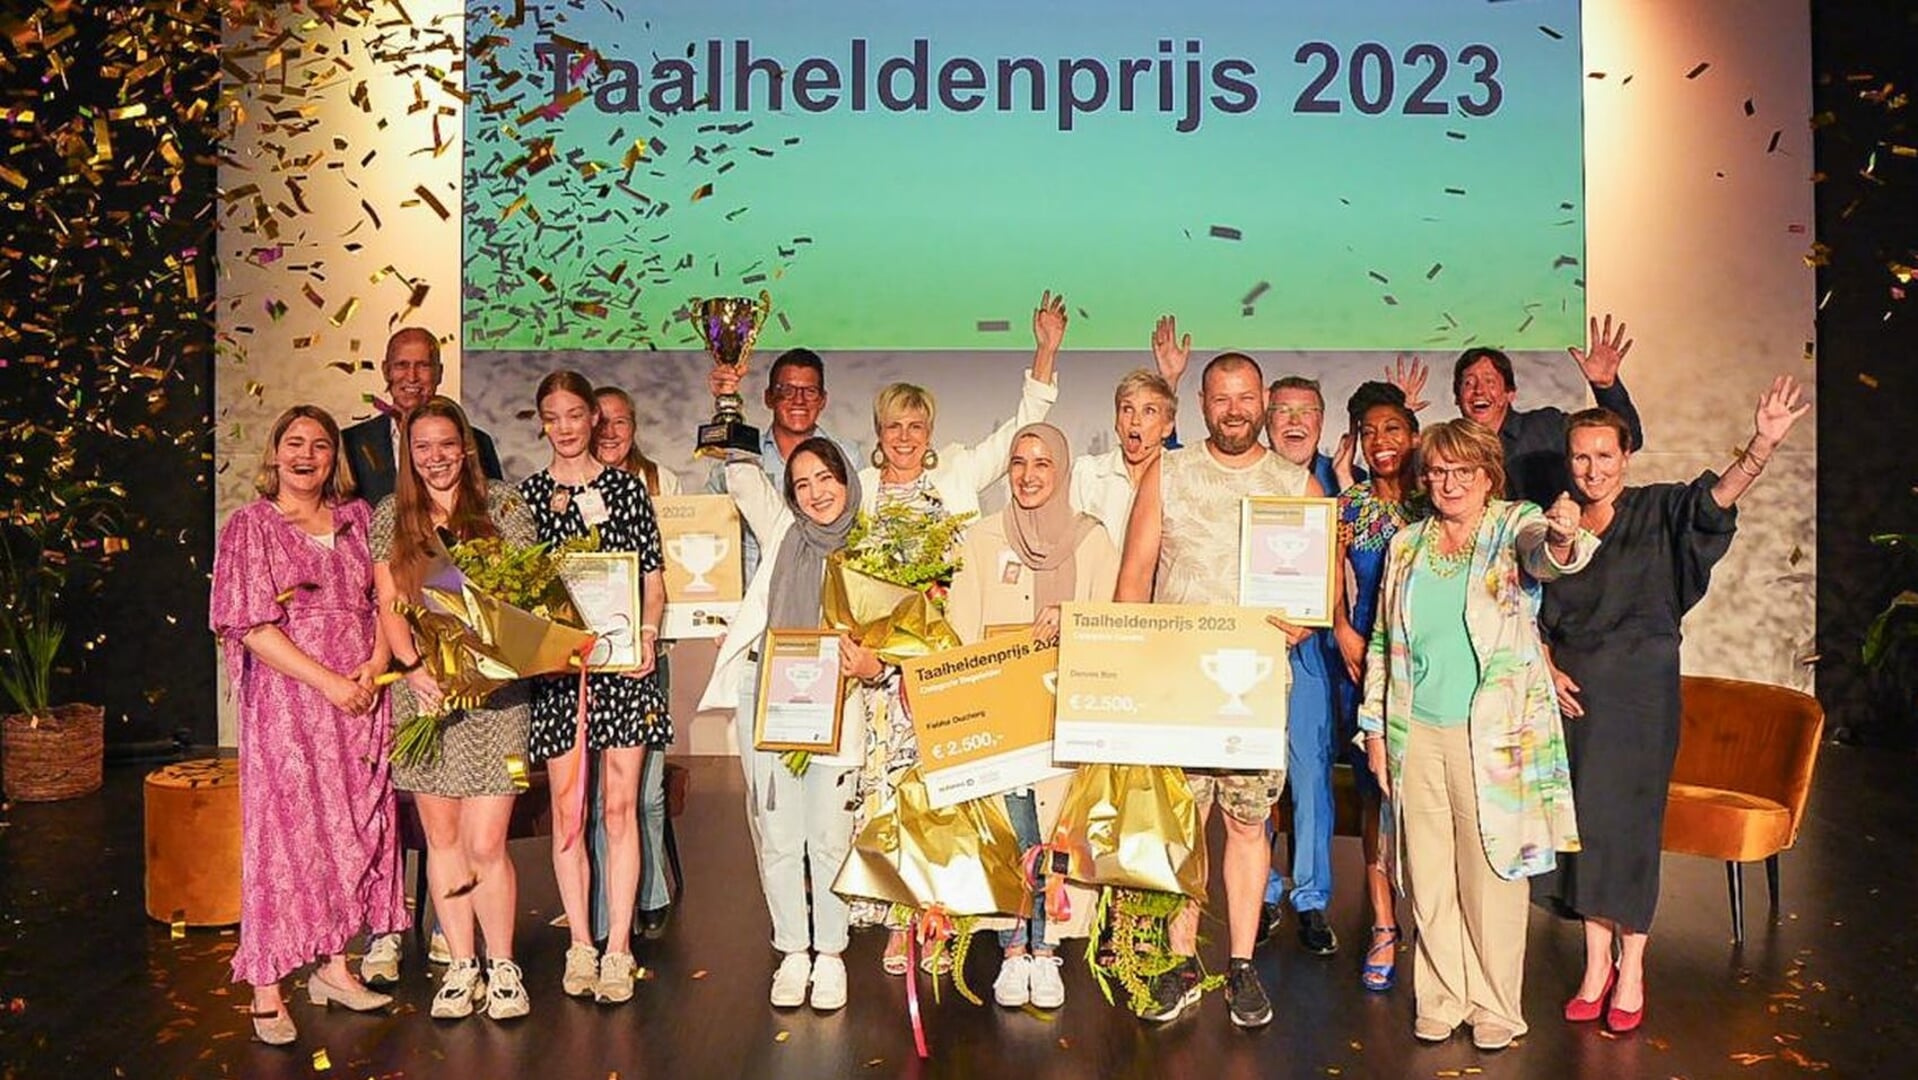 De Taalhelden van 2023 op het podium met in het midden Prinses Laurentien.